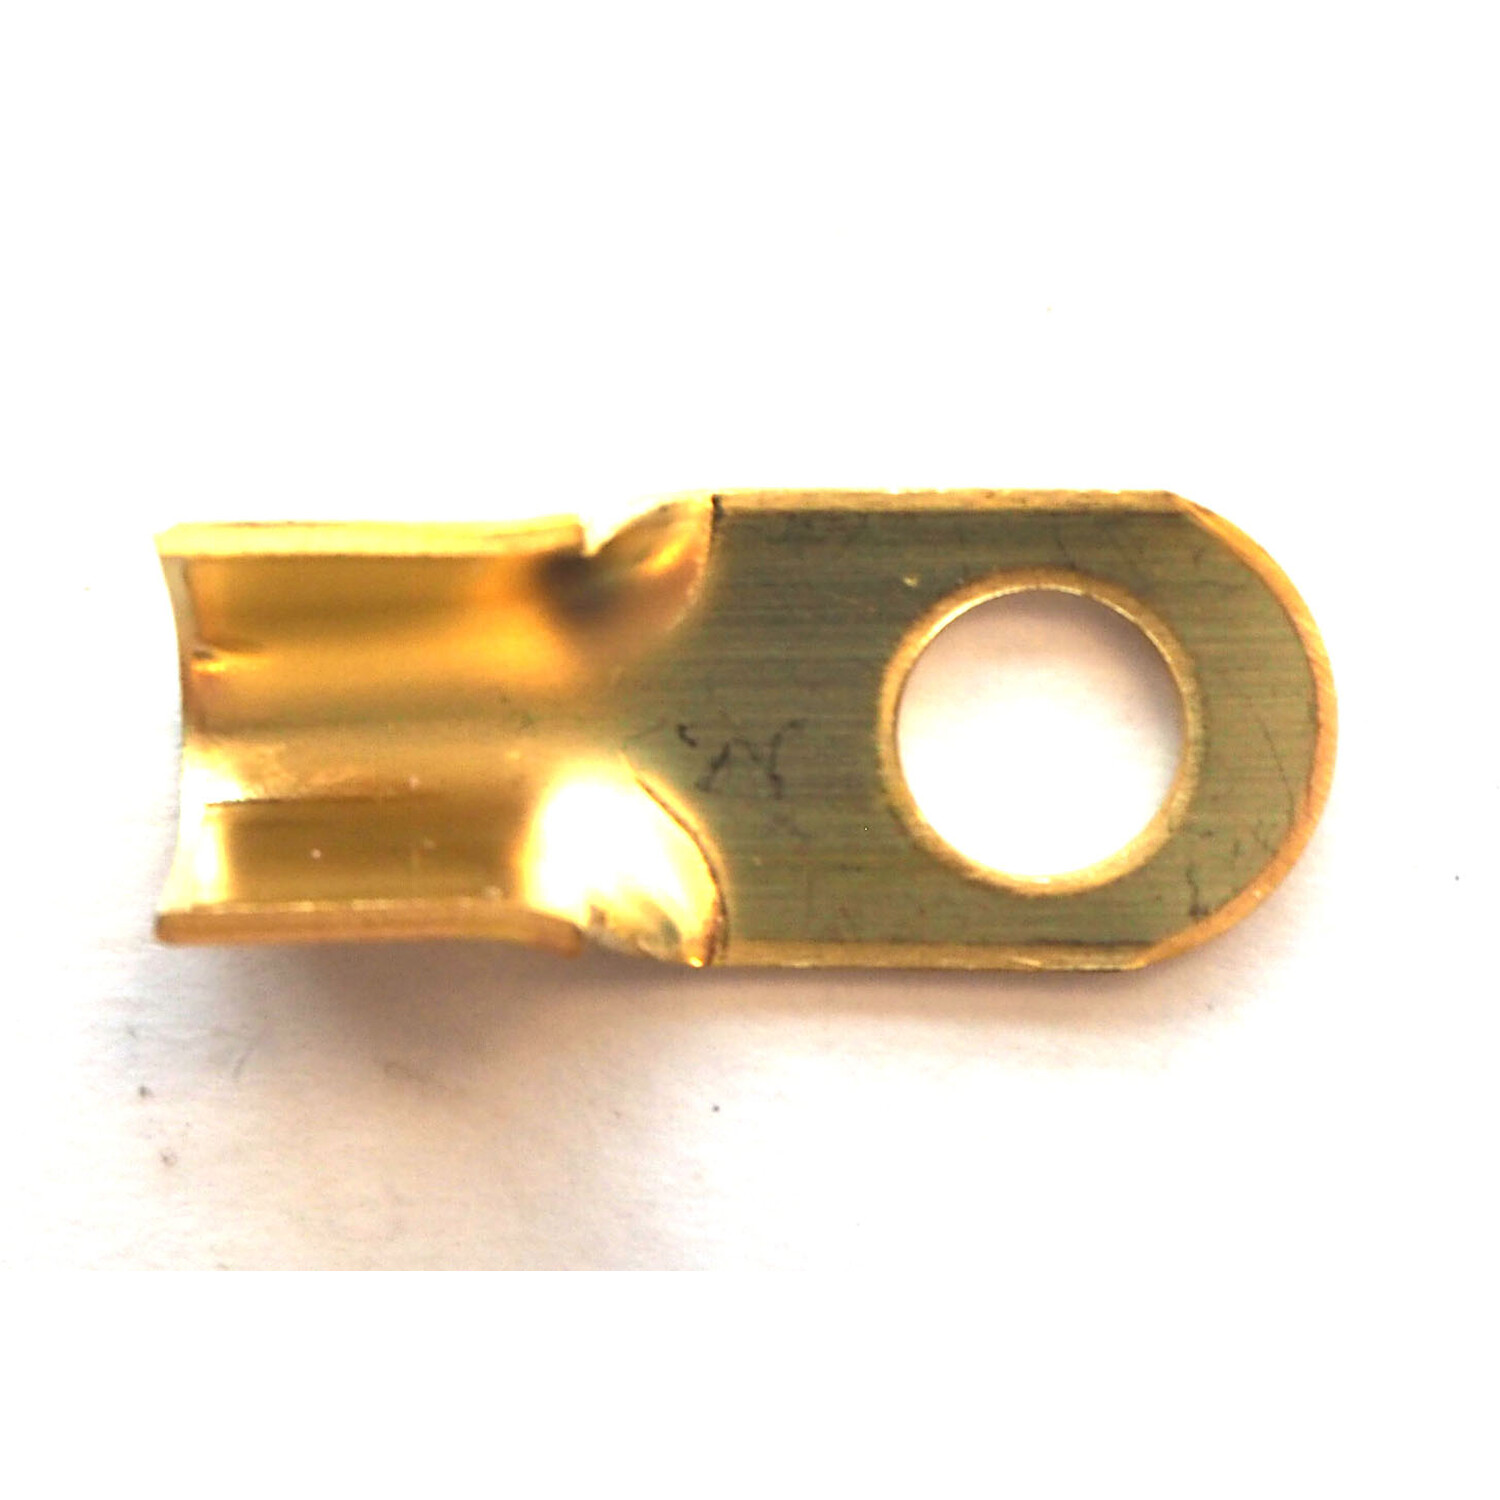 Autobar Ring Terminal 8mm Image